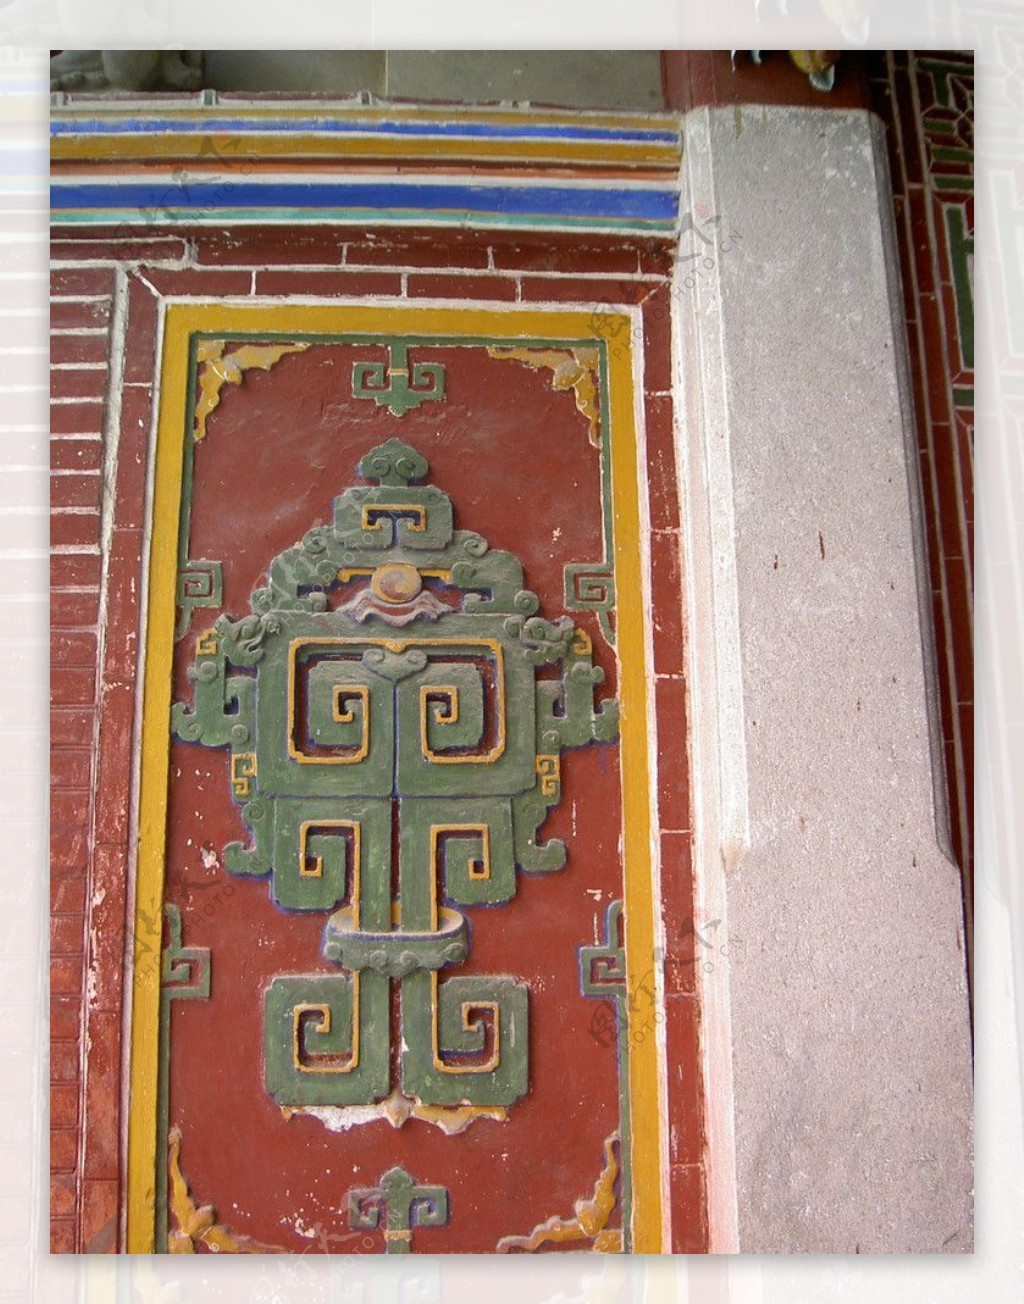 安溪文庙壁饰图片